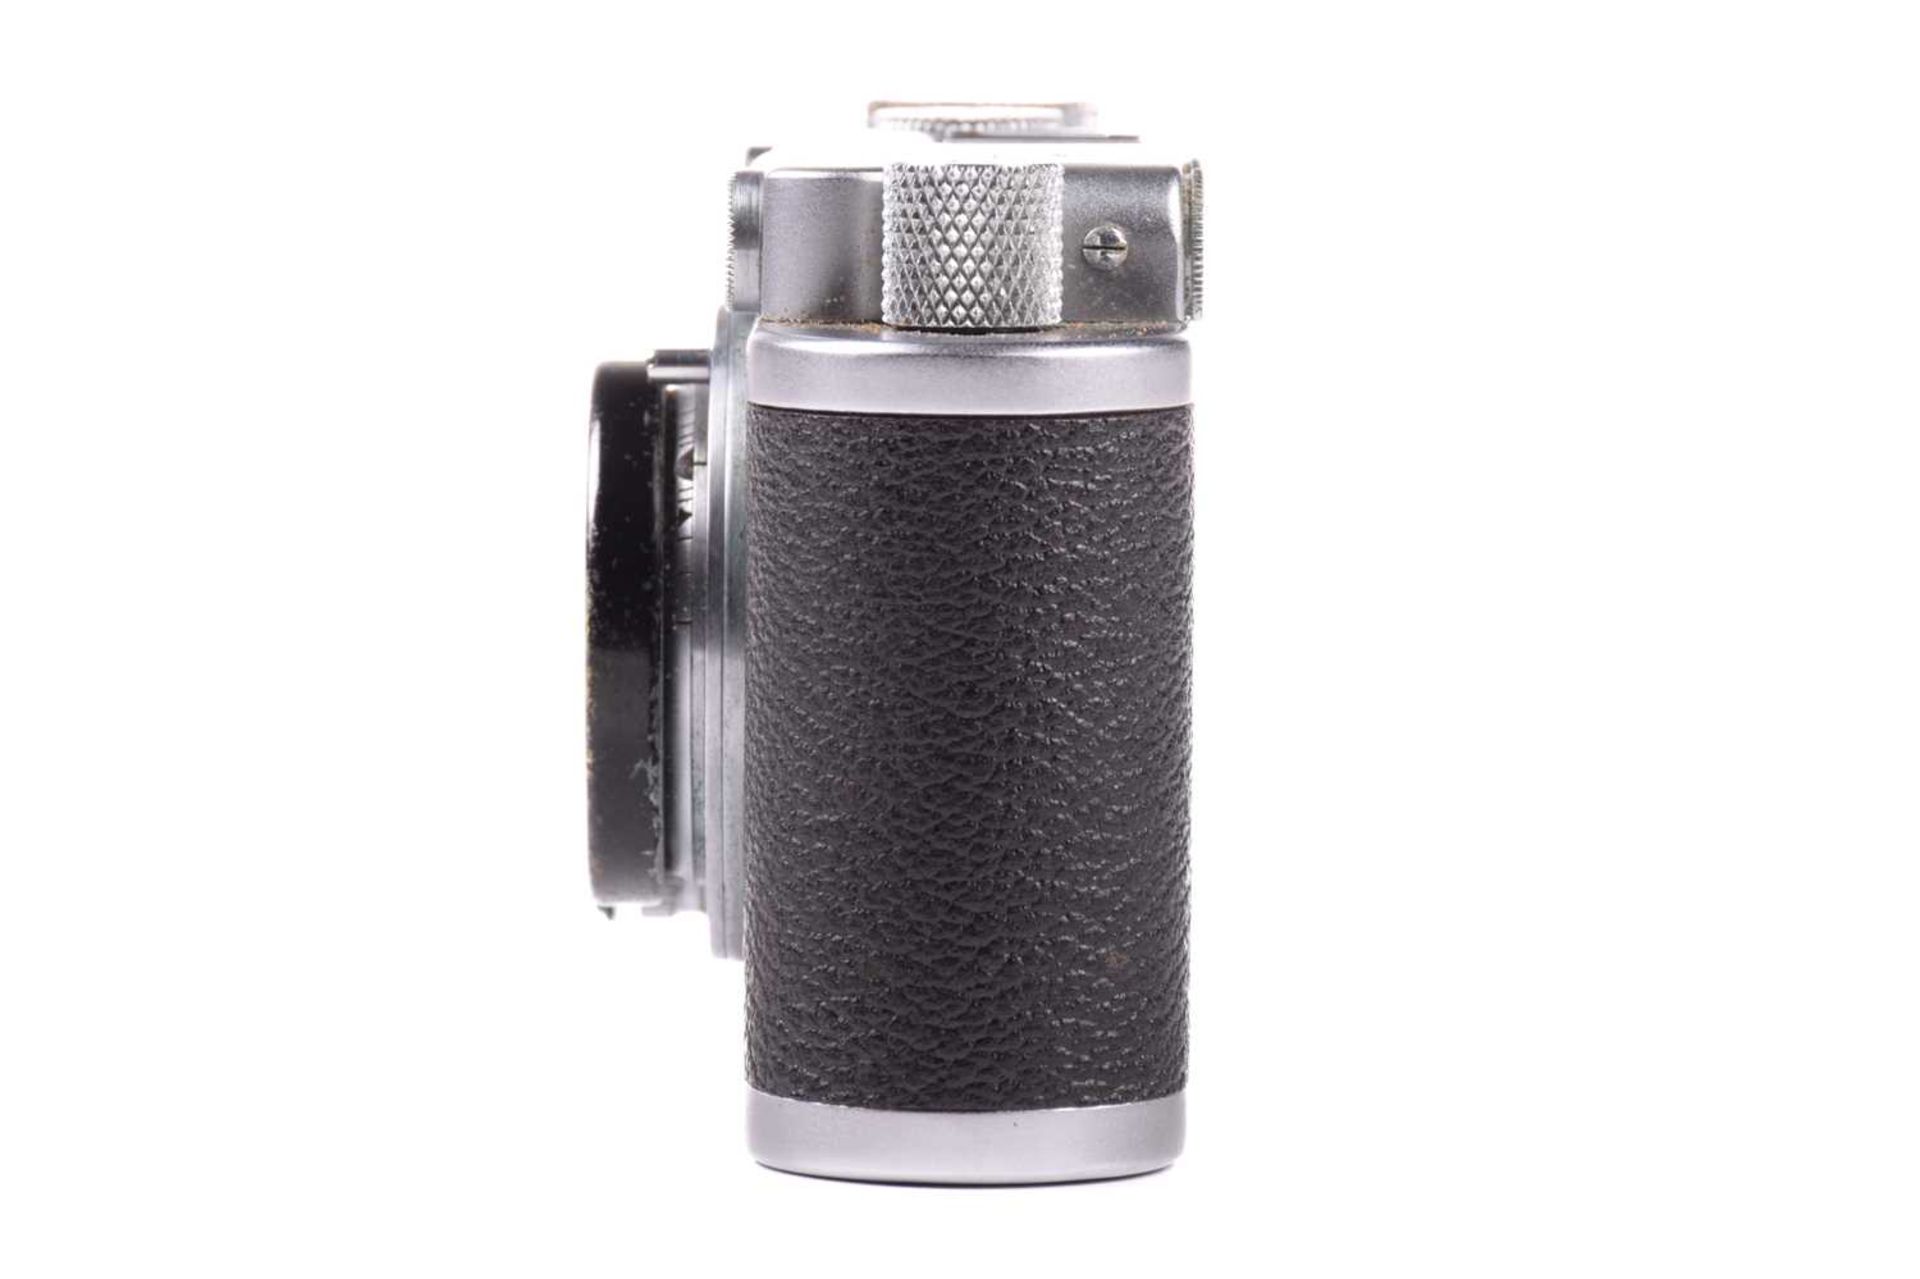 A Leitz Wetzlar Leica III Rangefinder camera, 35 mm, 1935, in original fitted leather case, serial - Bild 8 aus 14